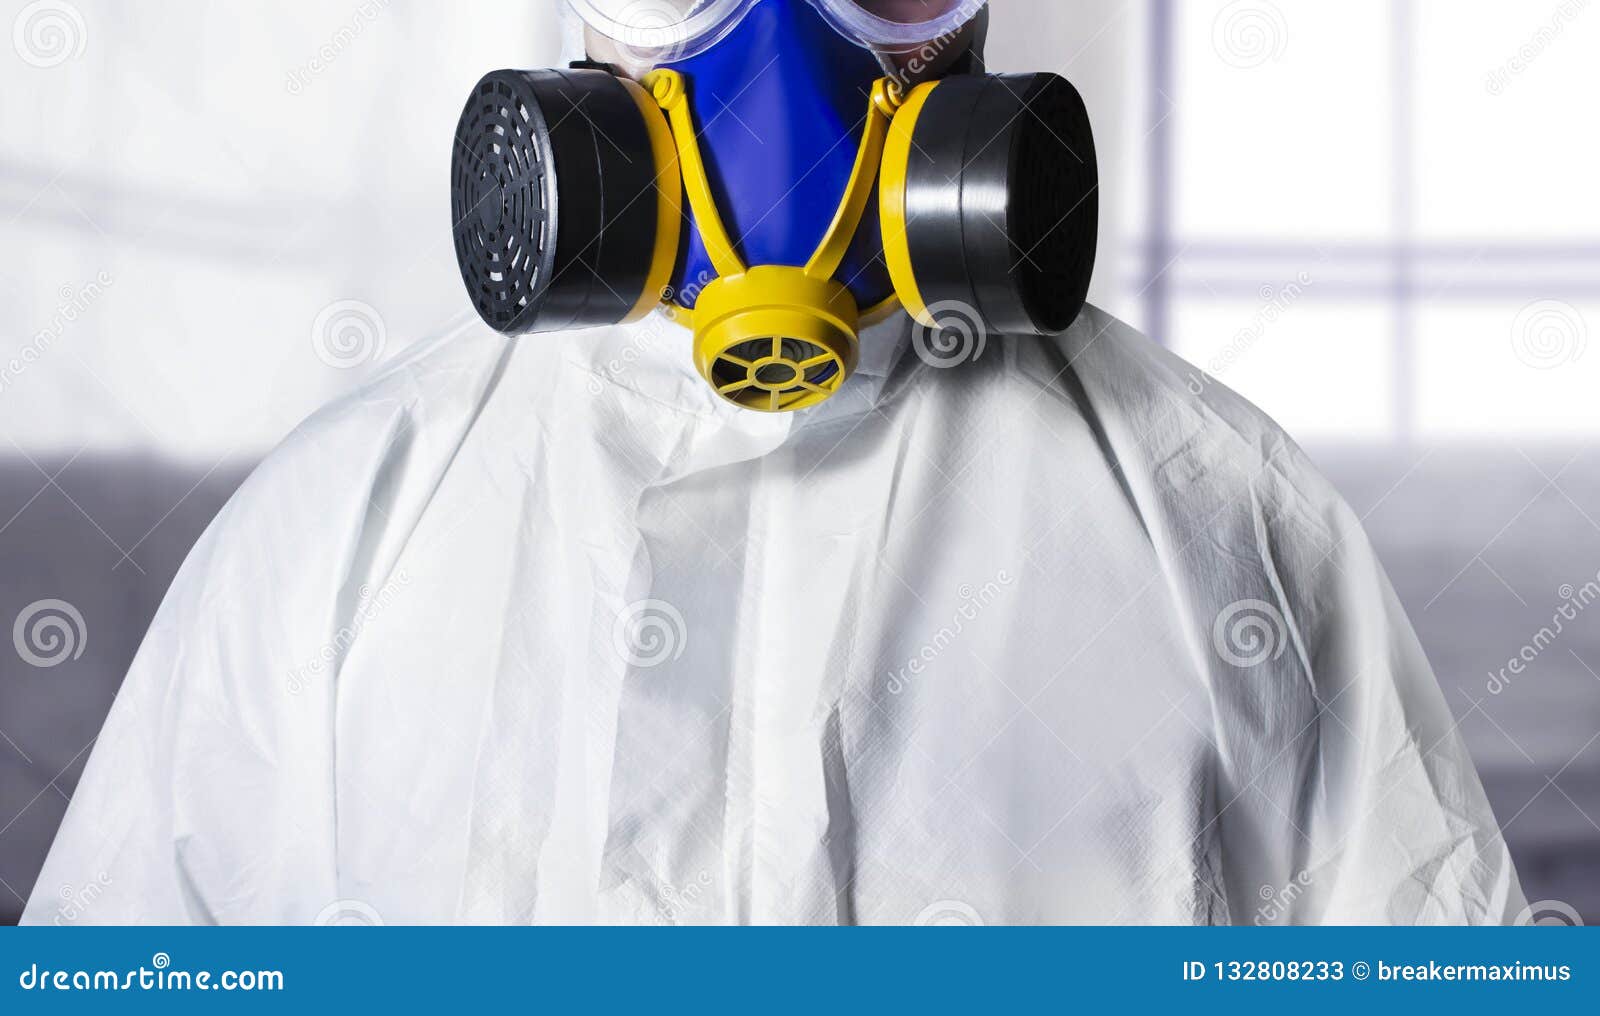 paint worker in respirator